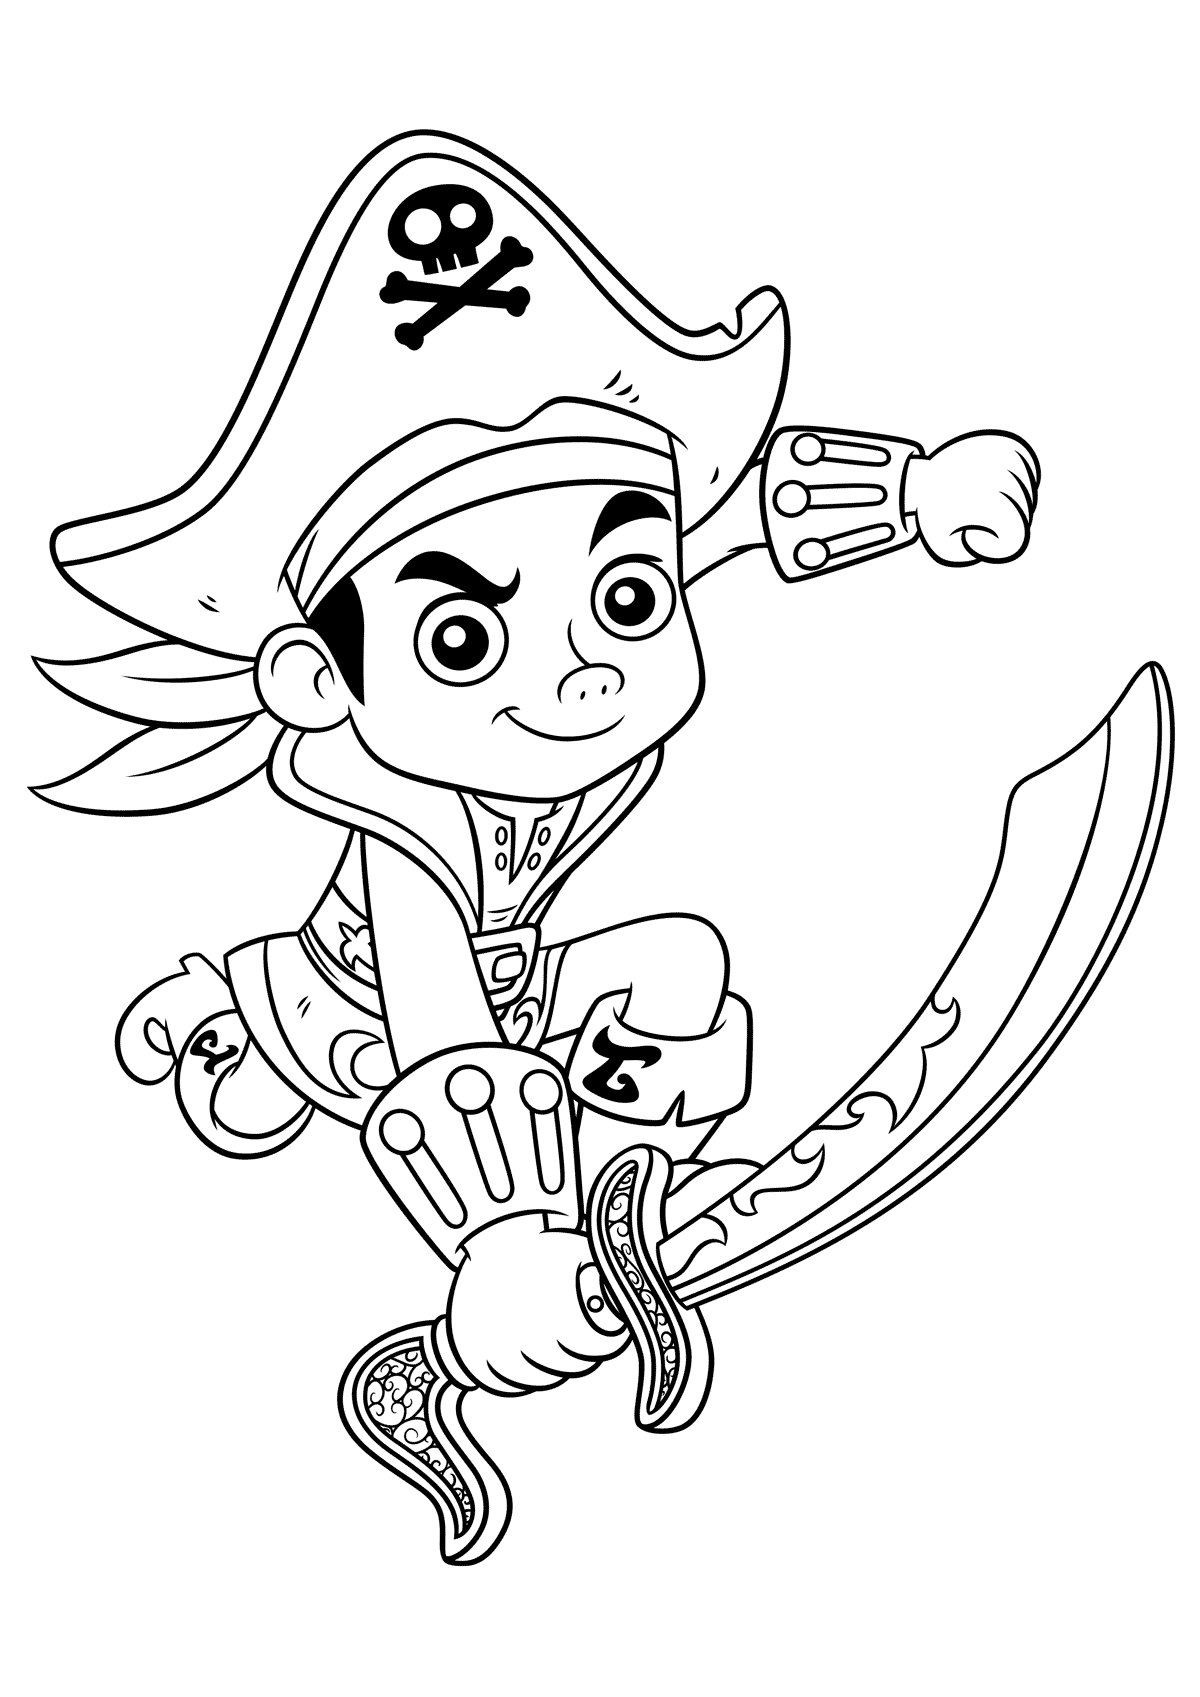 Раскраски Джейк и пираты Нетландии приглашают юных любителей приключений отправиться в морское плавание, полное опасностей и тайн Скачайте или распечатайте раскраски Джейк и пираты Нетландии для детей, которые мы предлагаем вам совершенно бесплатно